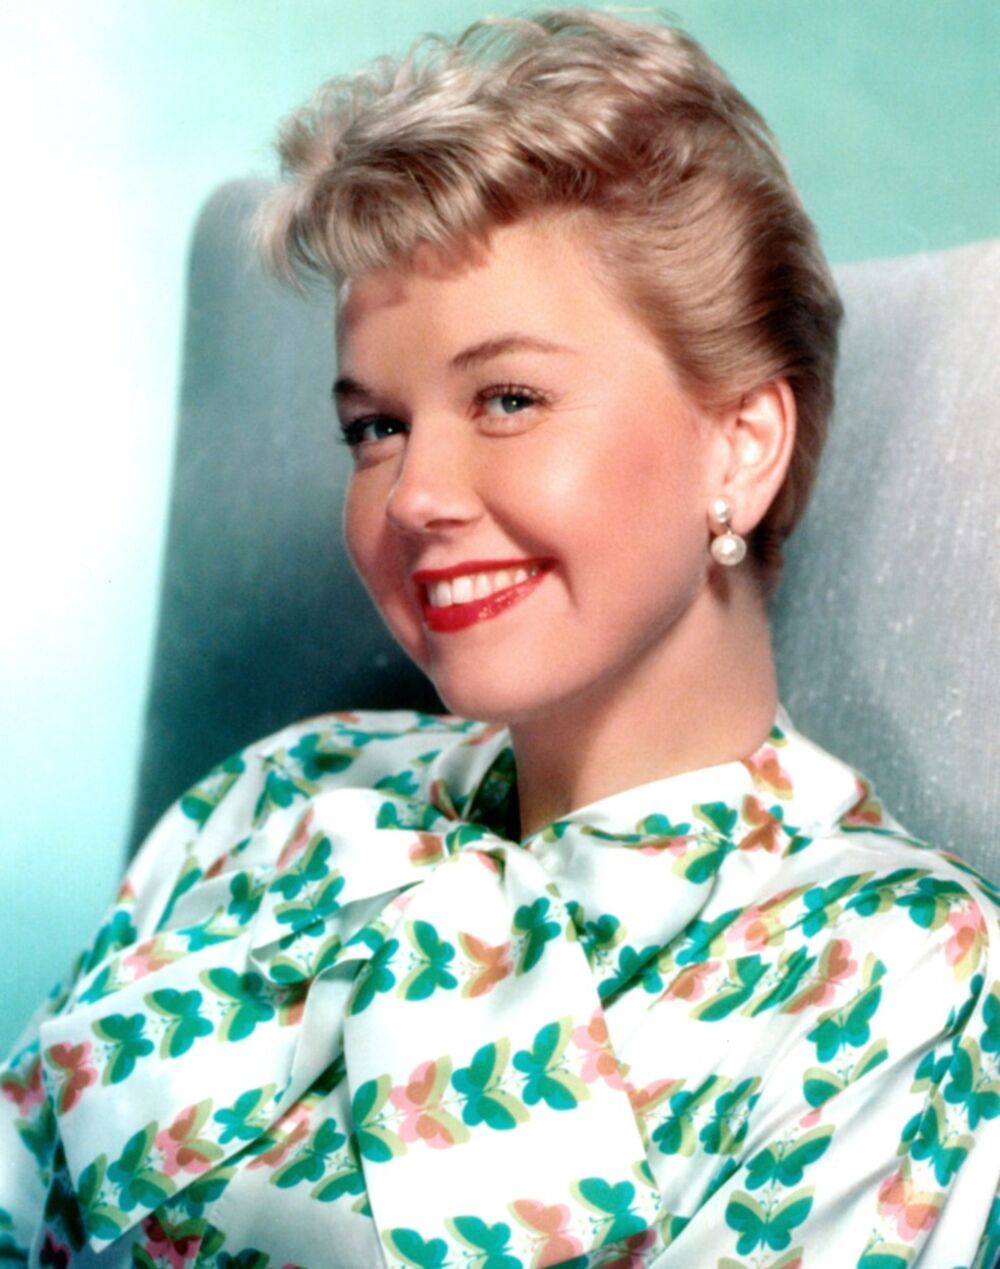 <p>Jedna od najlepših žena u istoriji Holivuda bila je poznata po širokom osmehu. Istina je, međutim, da se, kada se kamere isključe, nije toliko smejala.</p>